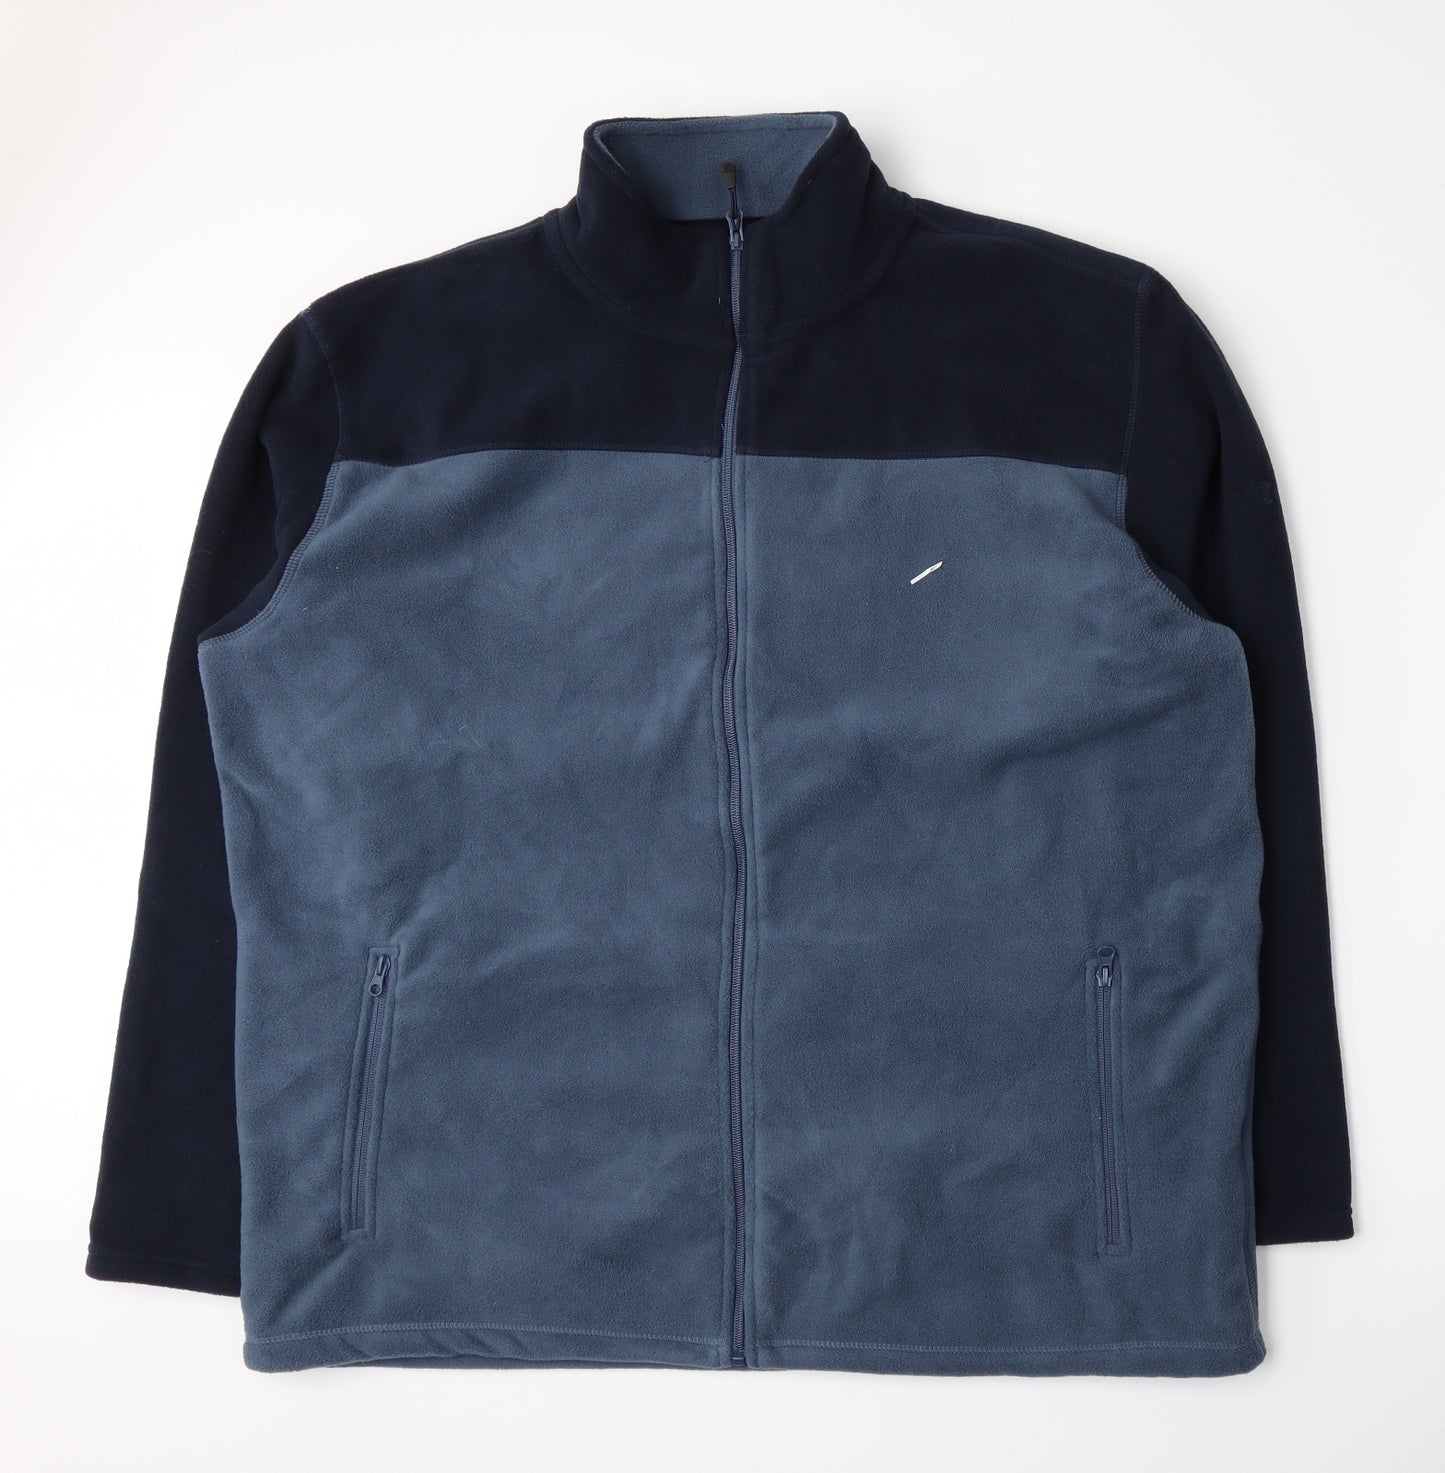 EWM Mens Blue  Fleece Jacket  Size 2XL